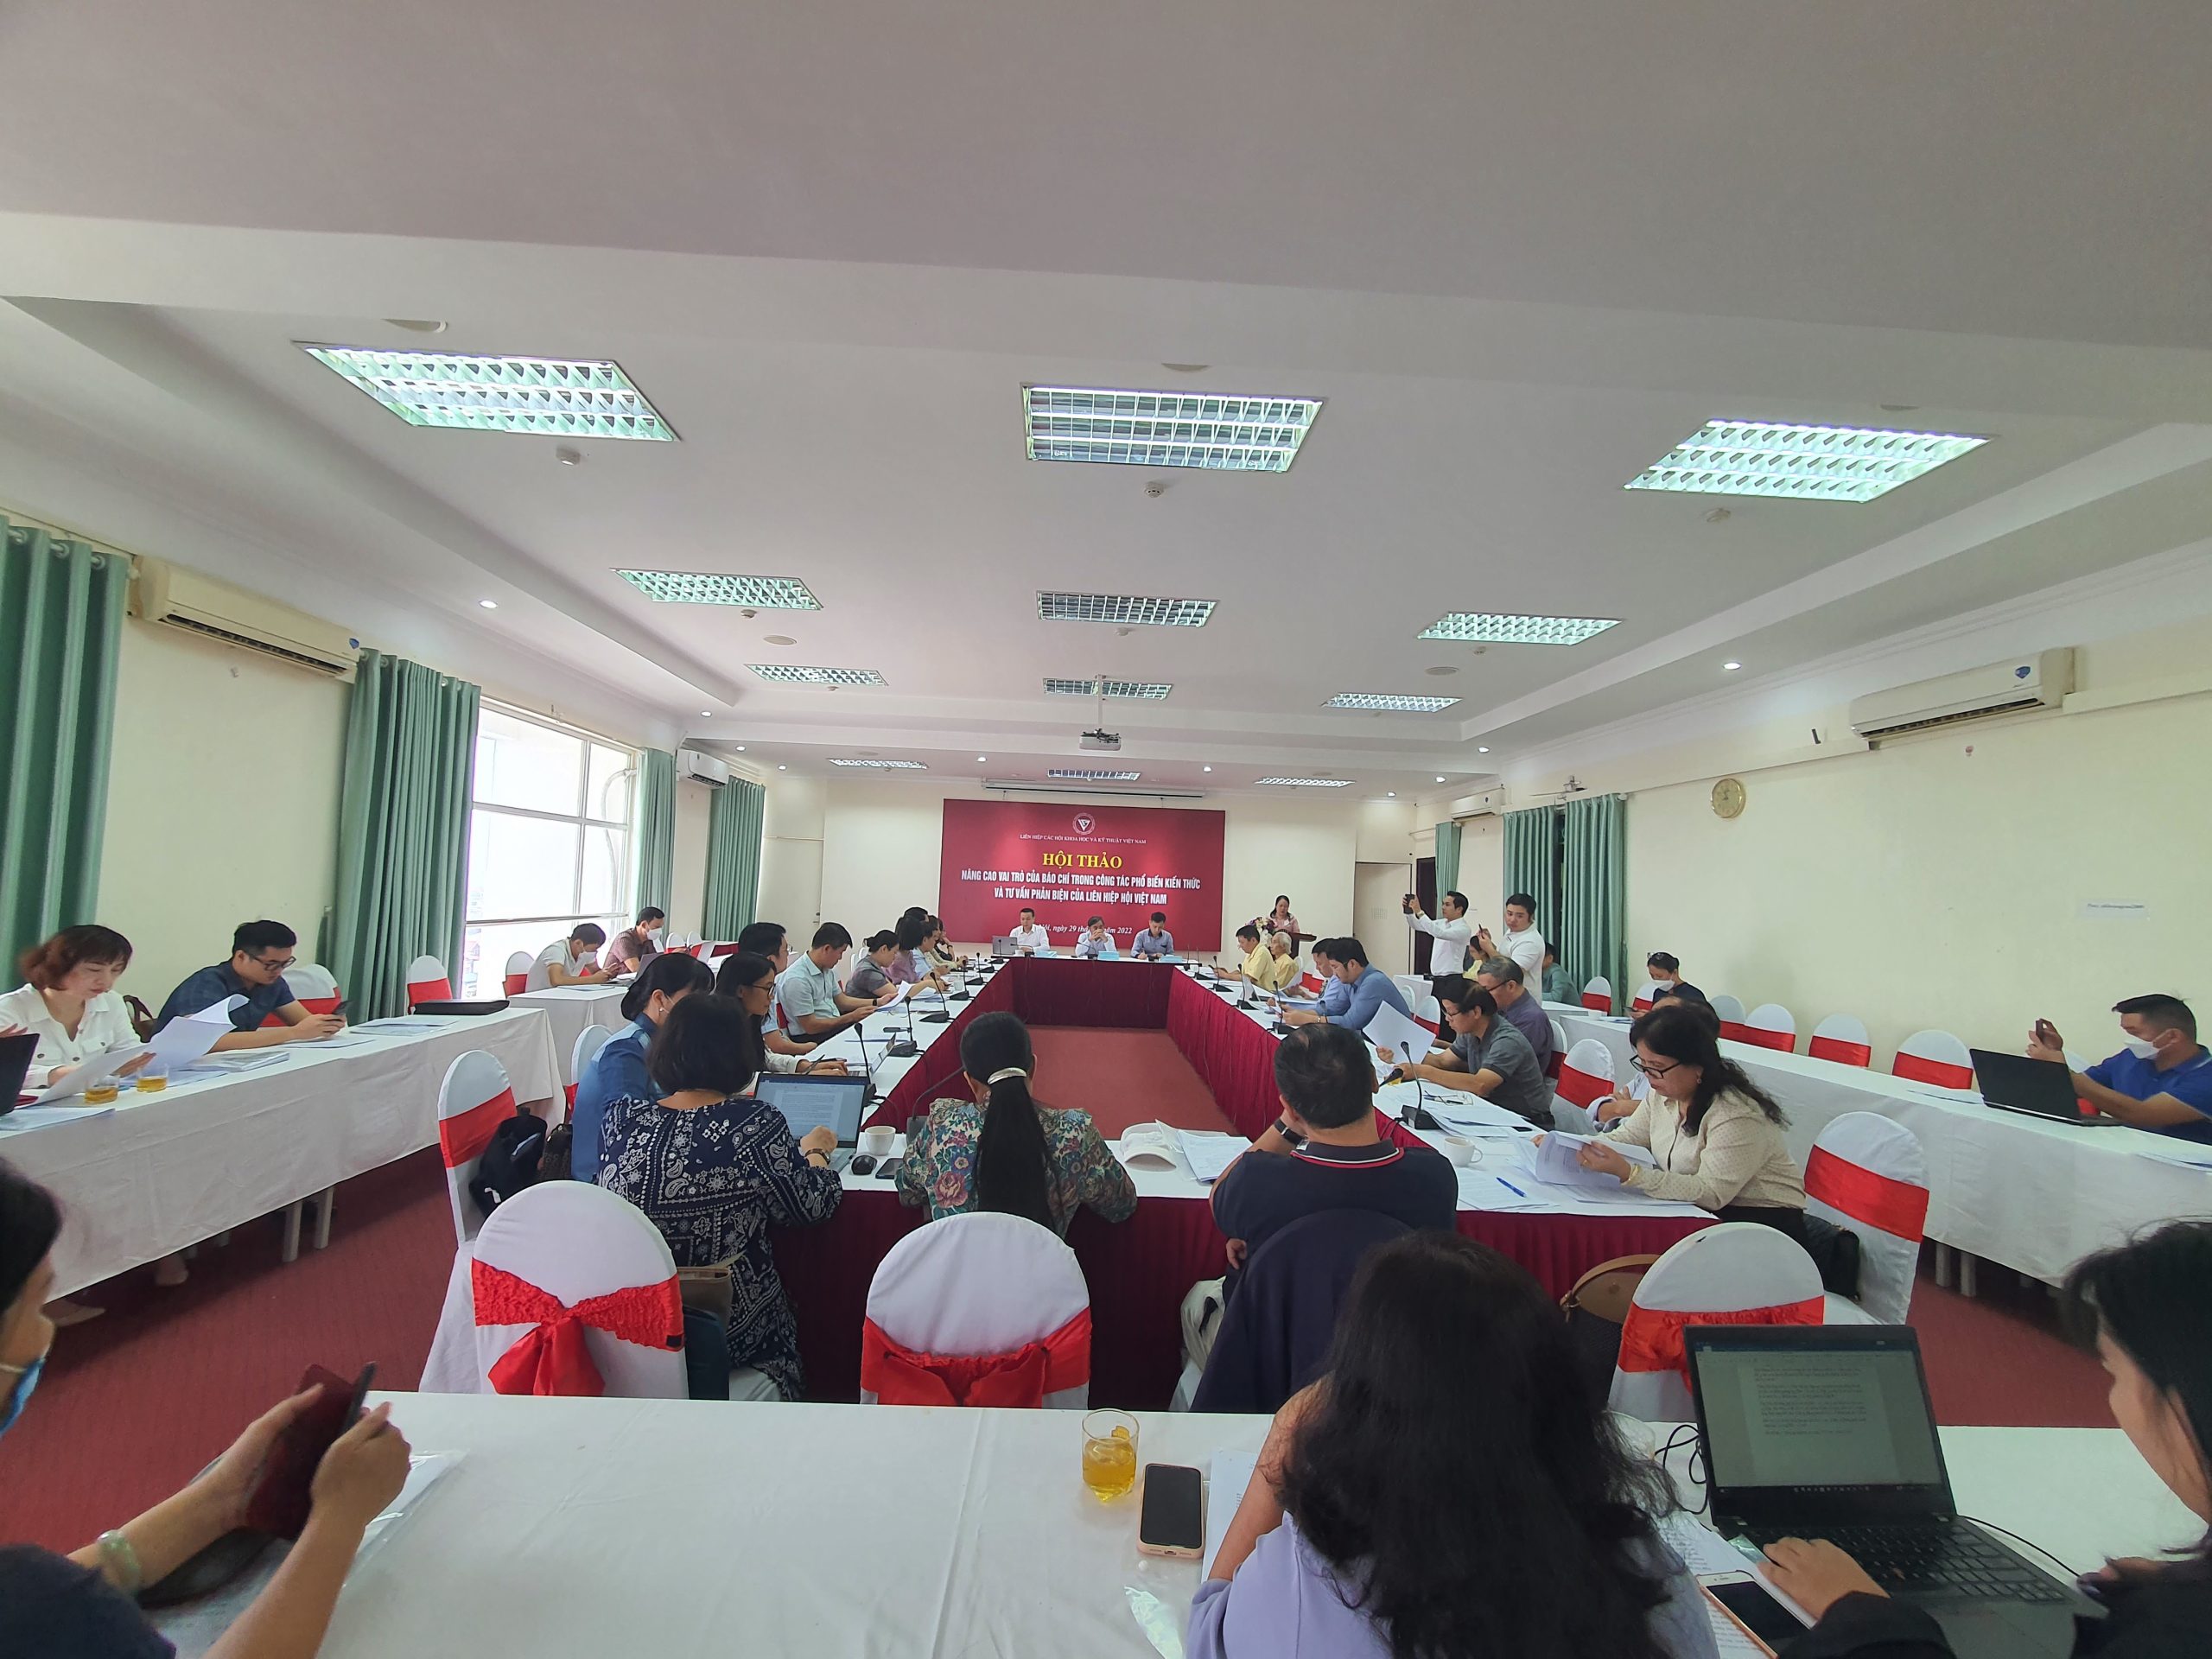 Quang cảnh tại buổi Hội thảo có nhiều cơ quan báo chí trực thuộc Liên hiệp Hội Việt Nam tới dự, quan tâm